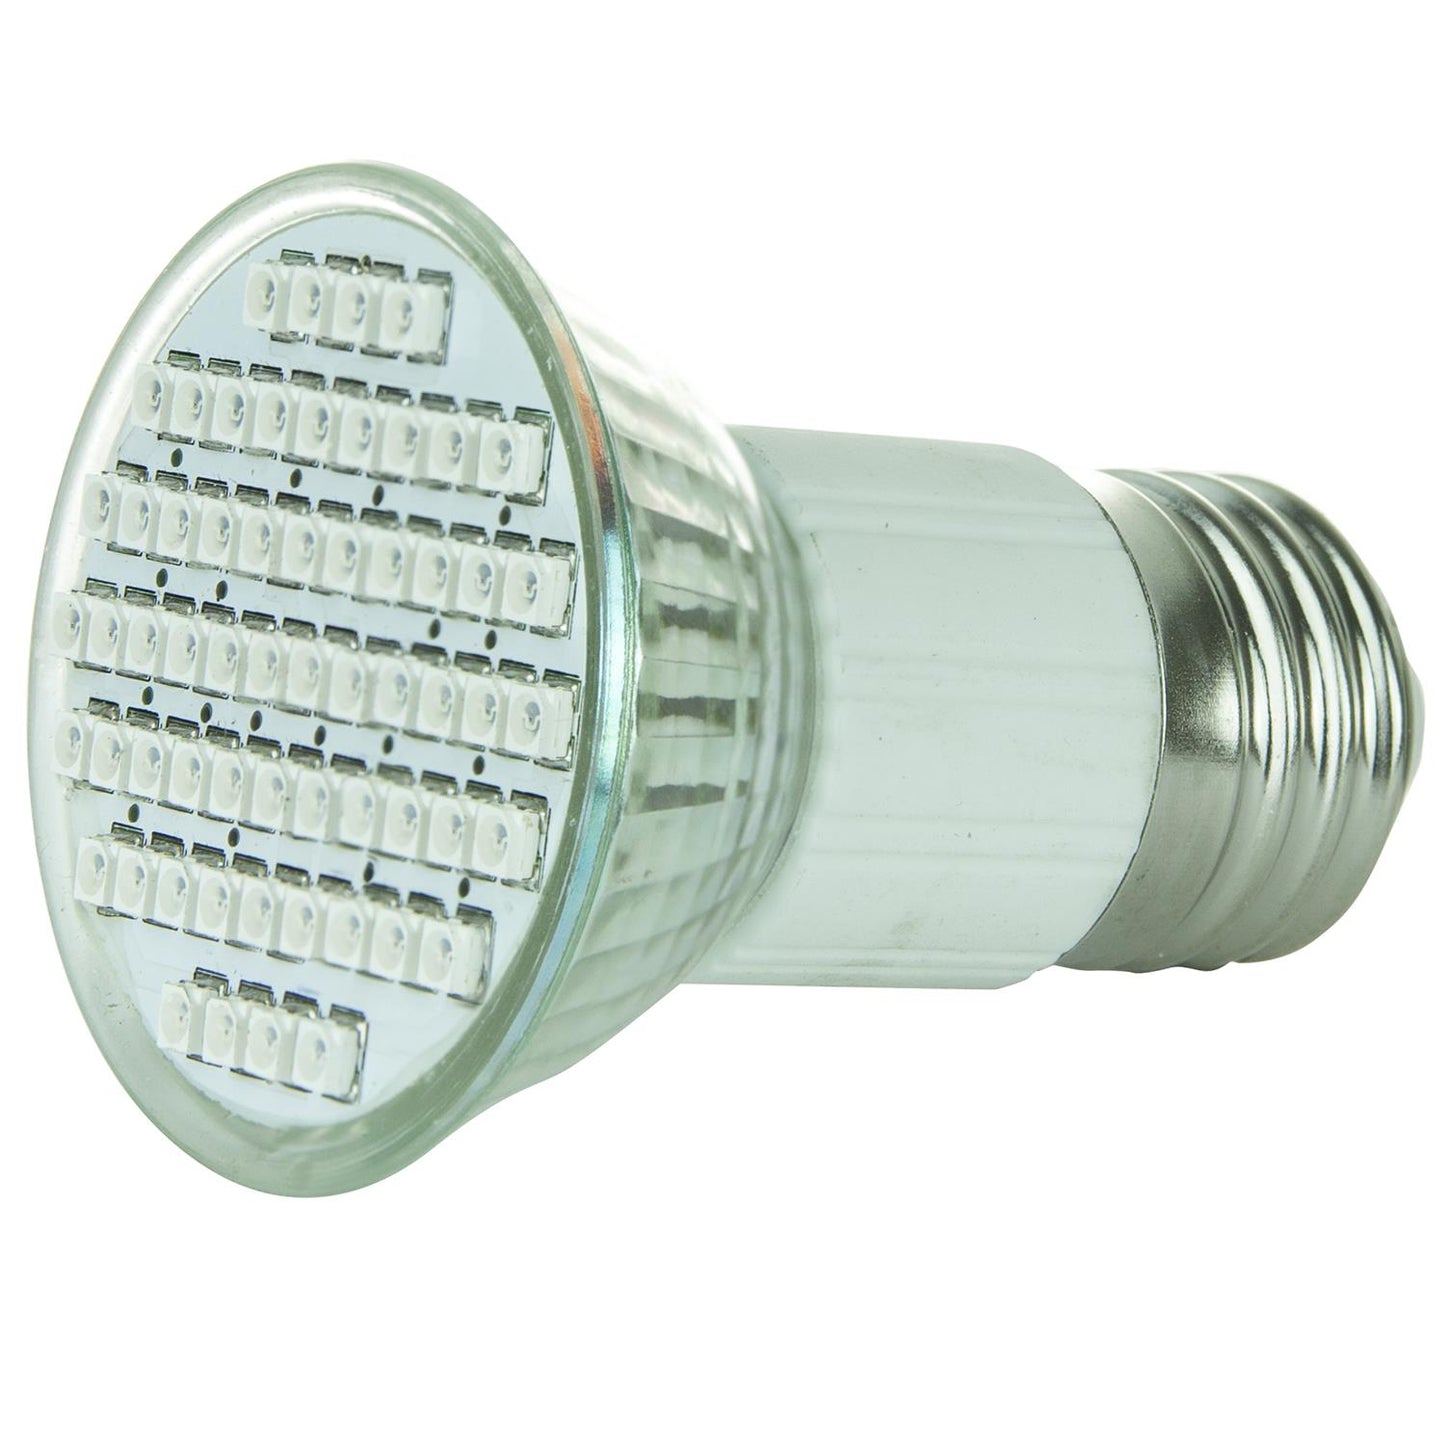 Sunlite LED JDR MR16 2.8W (25W Equivalent) Light Bulb Medium (E26) Base, Green